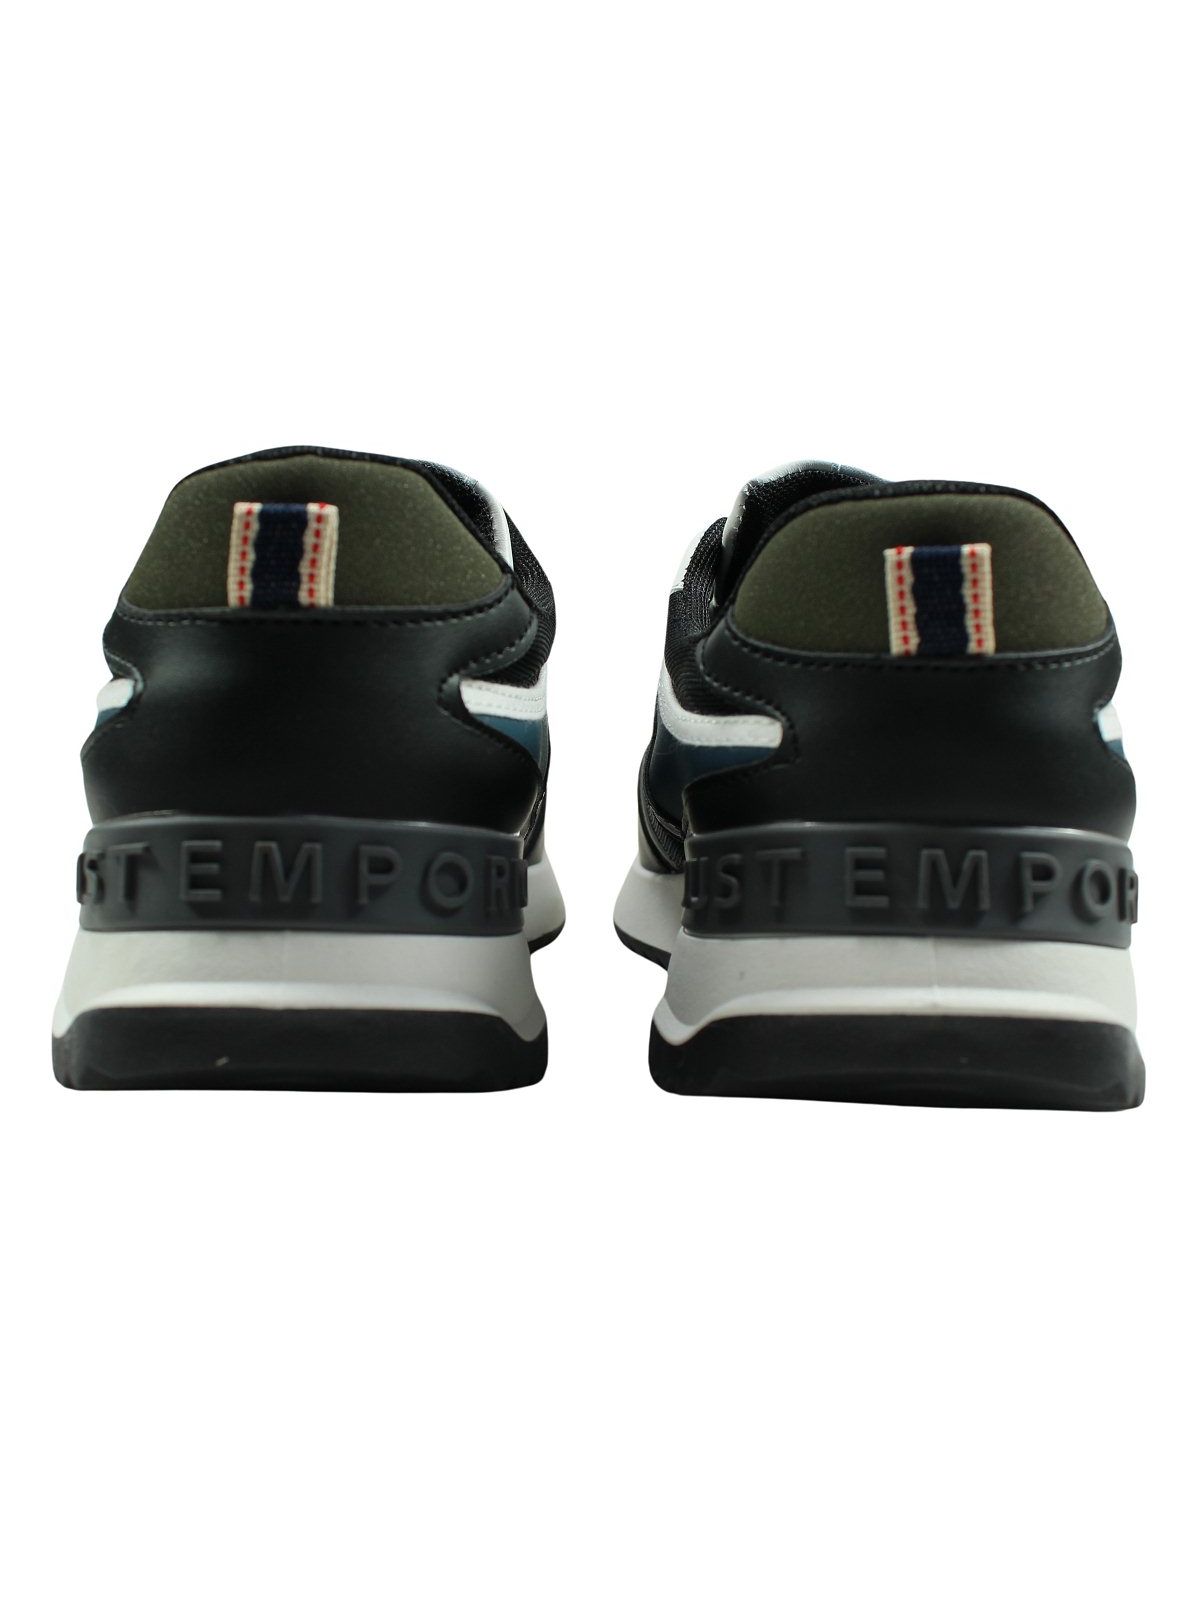 Just Emporio Men's Sneaker